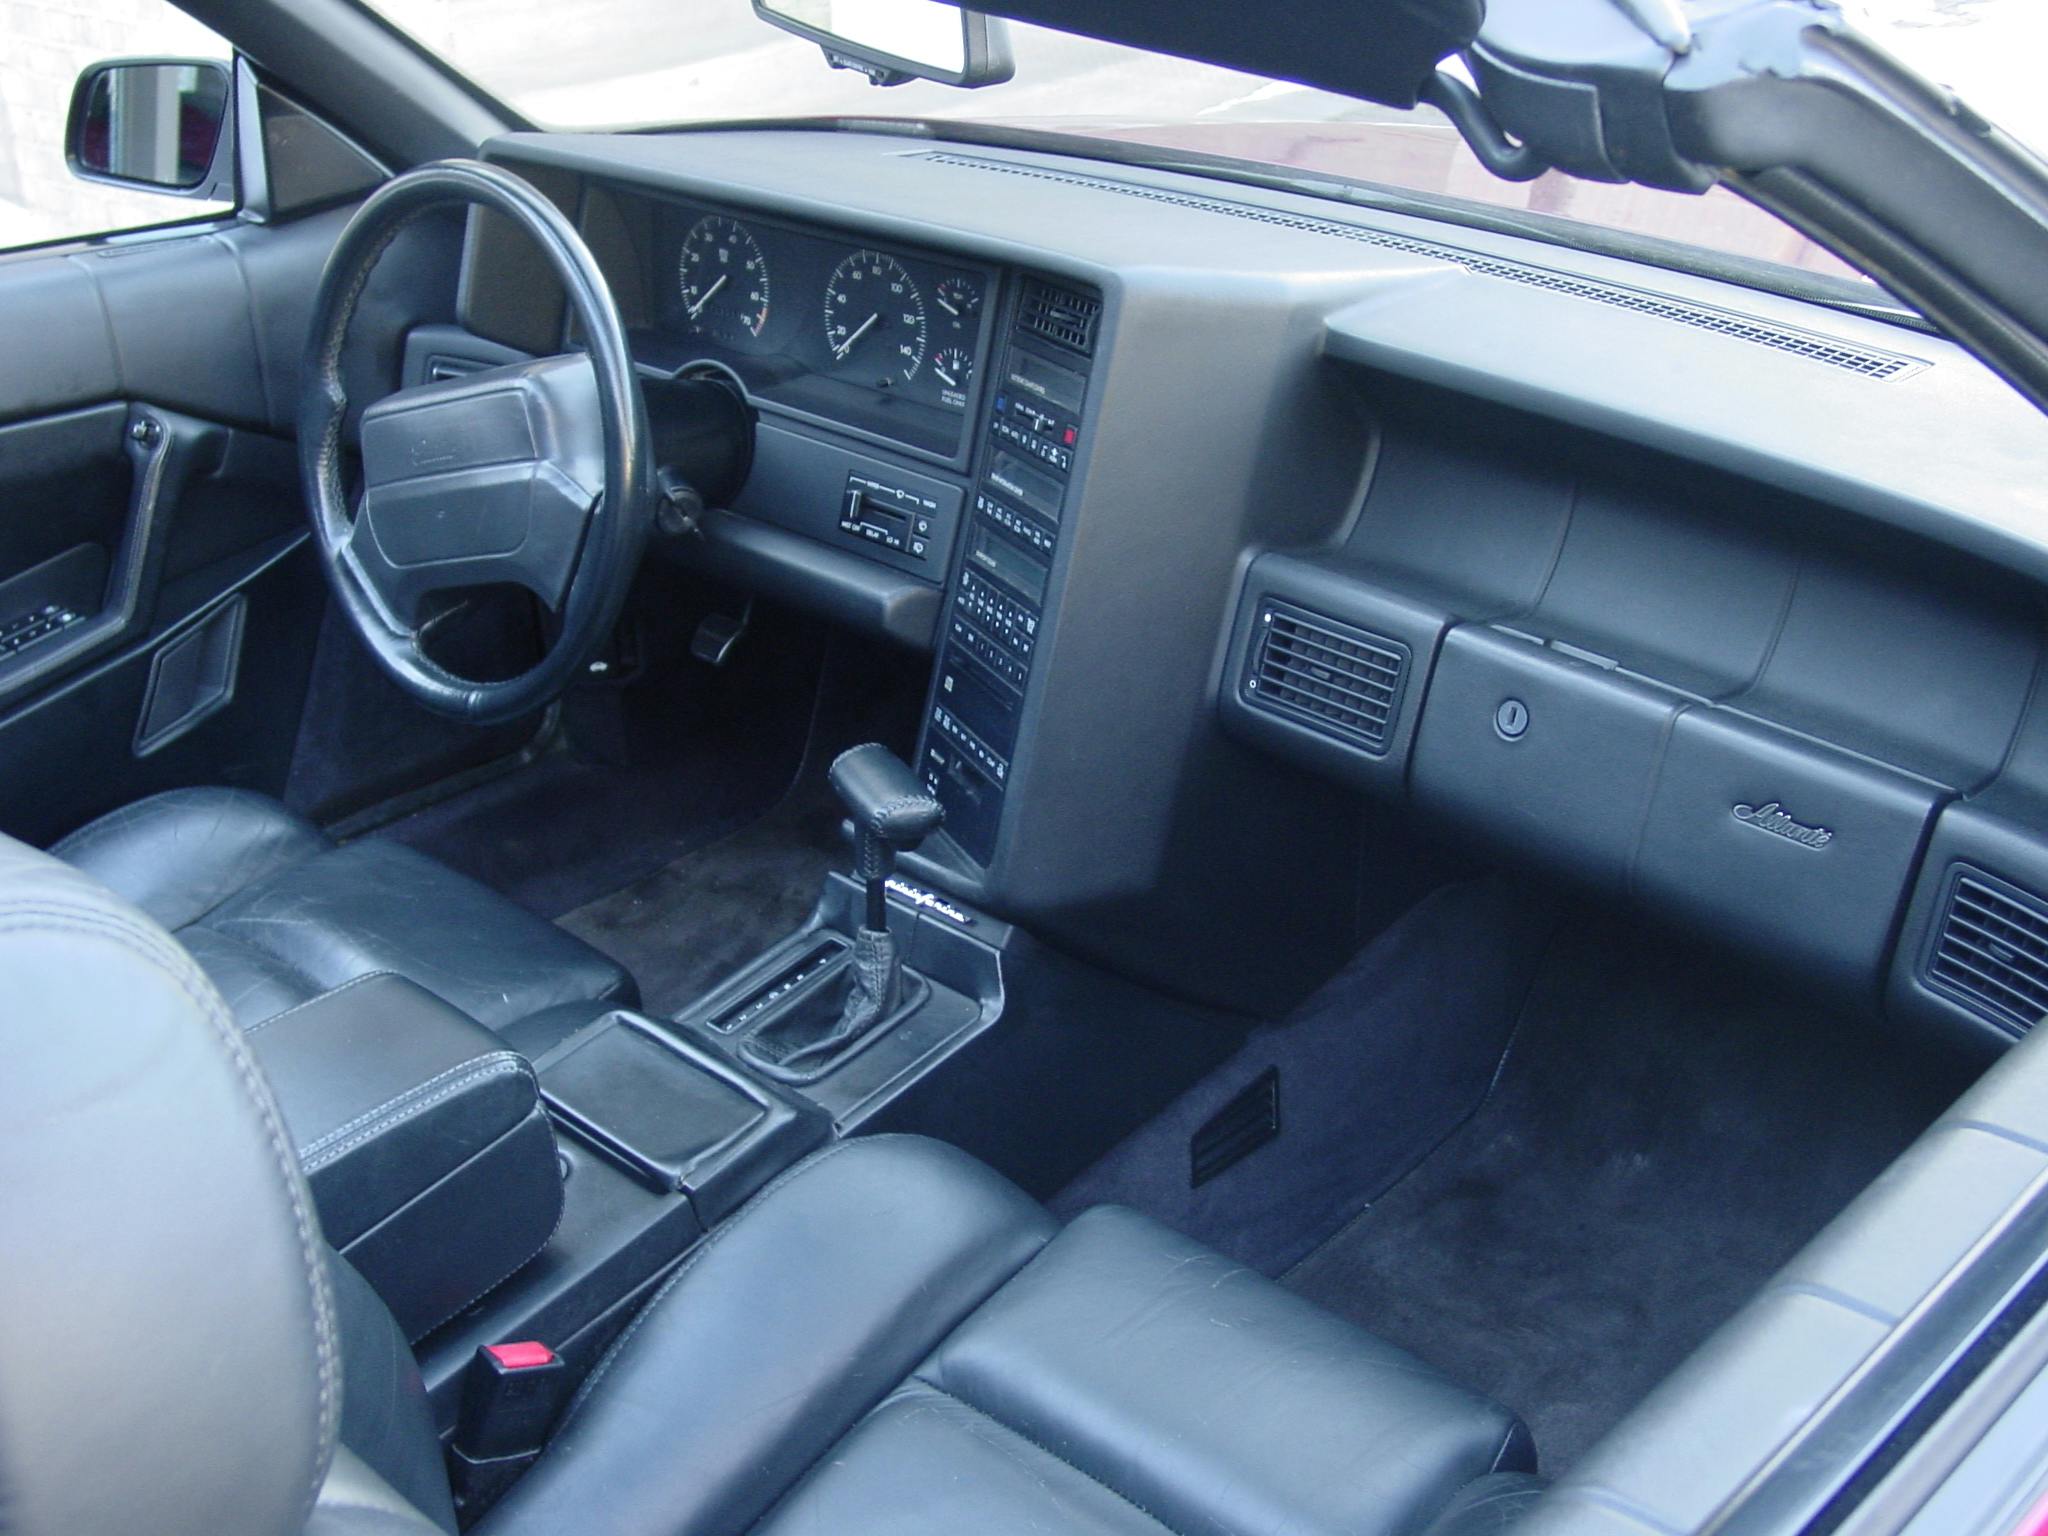 1993 Cadillac Allante interior 2